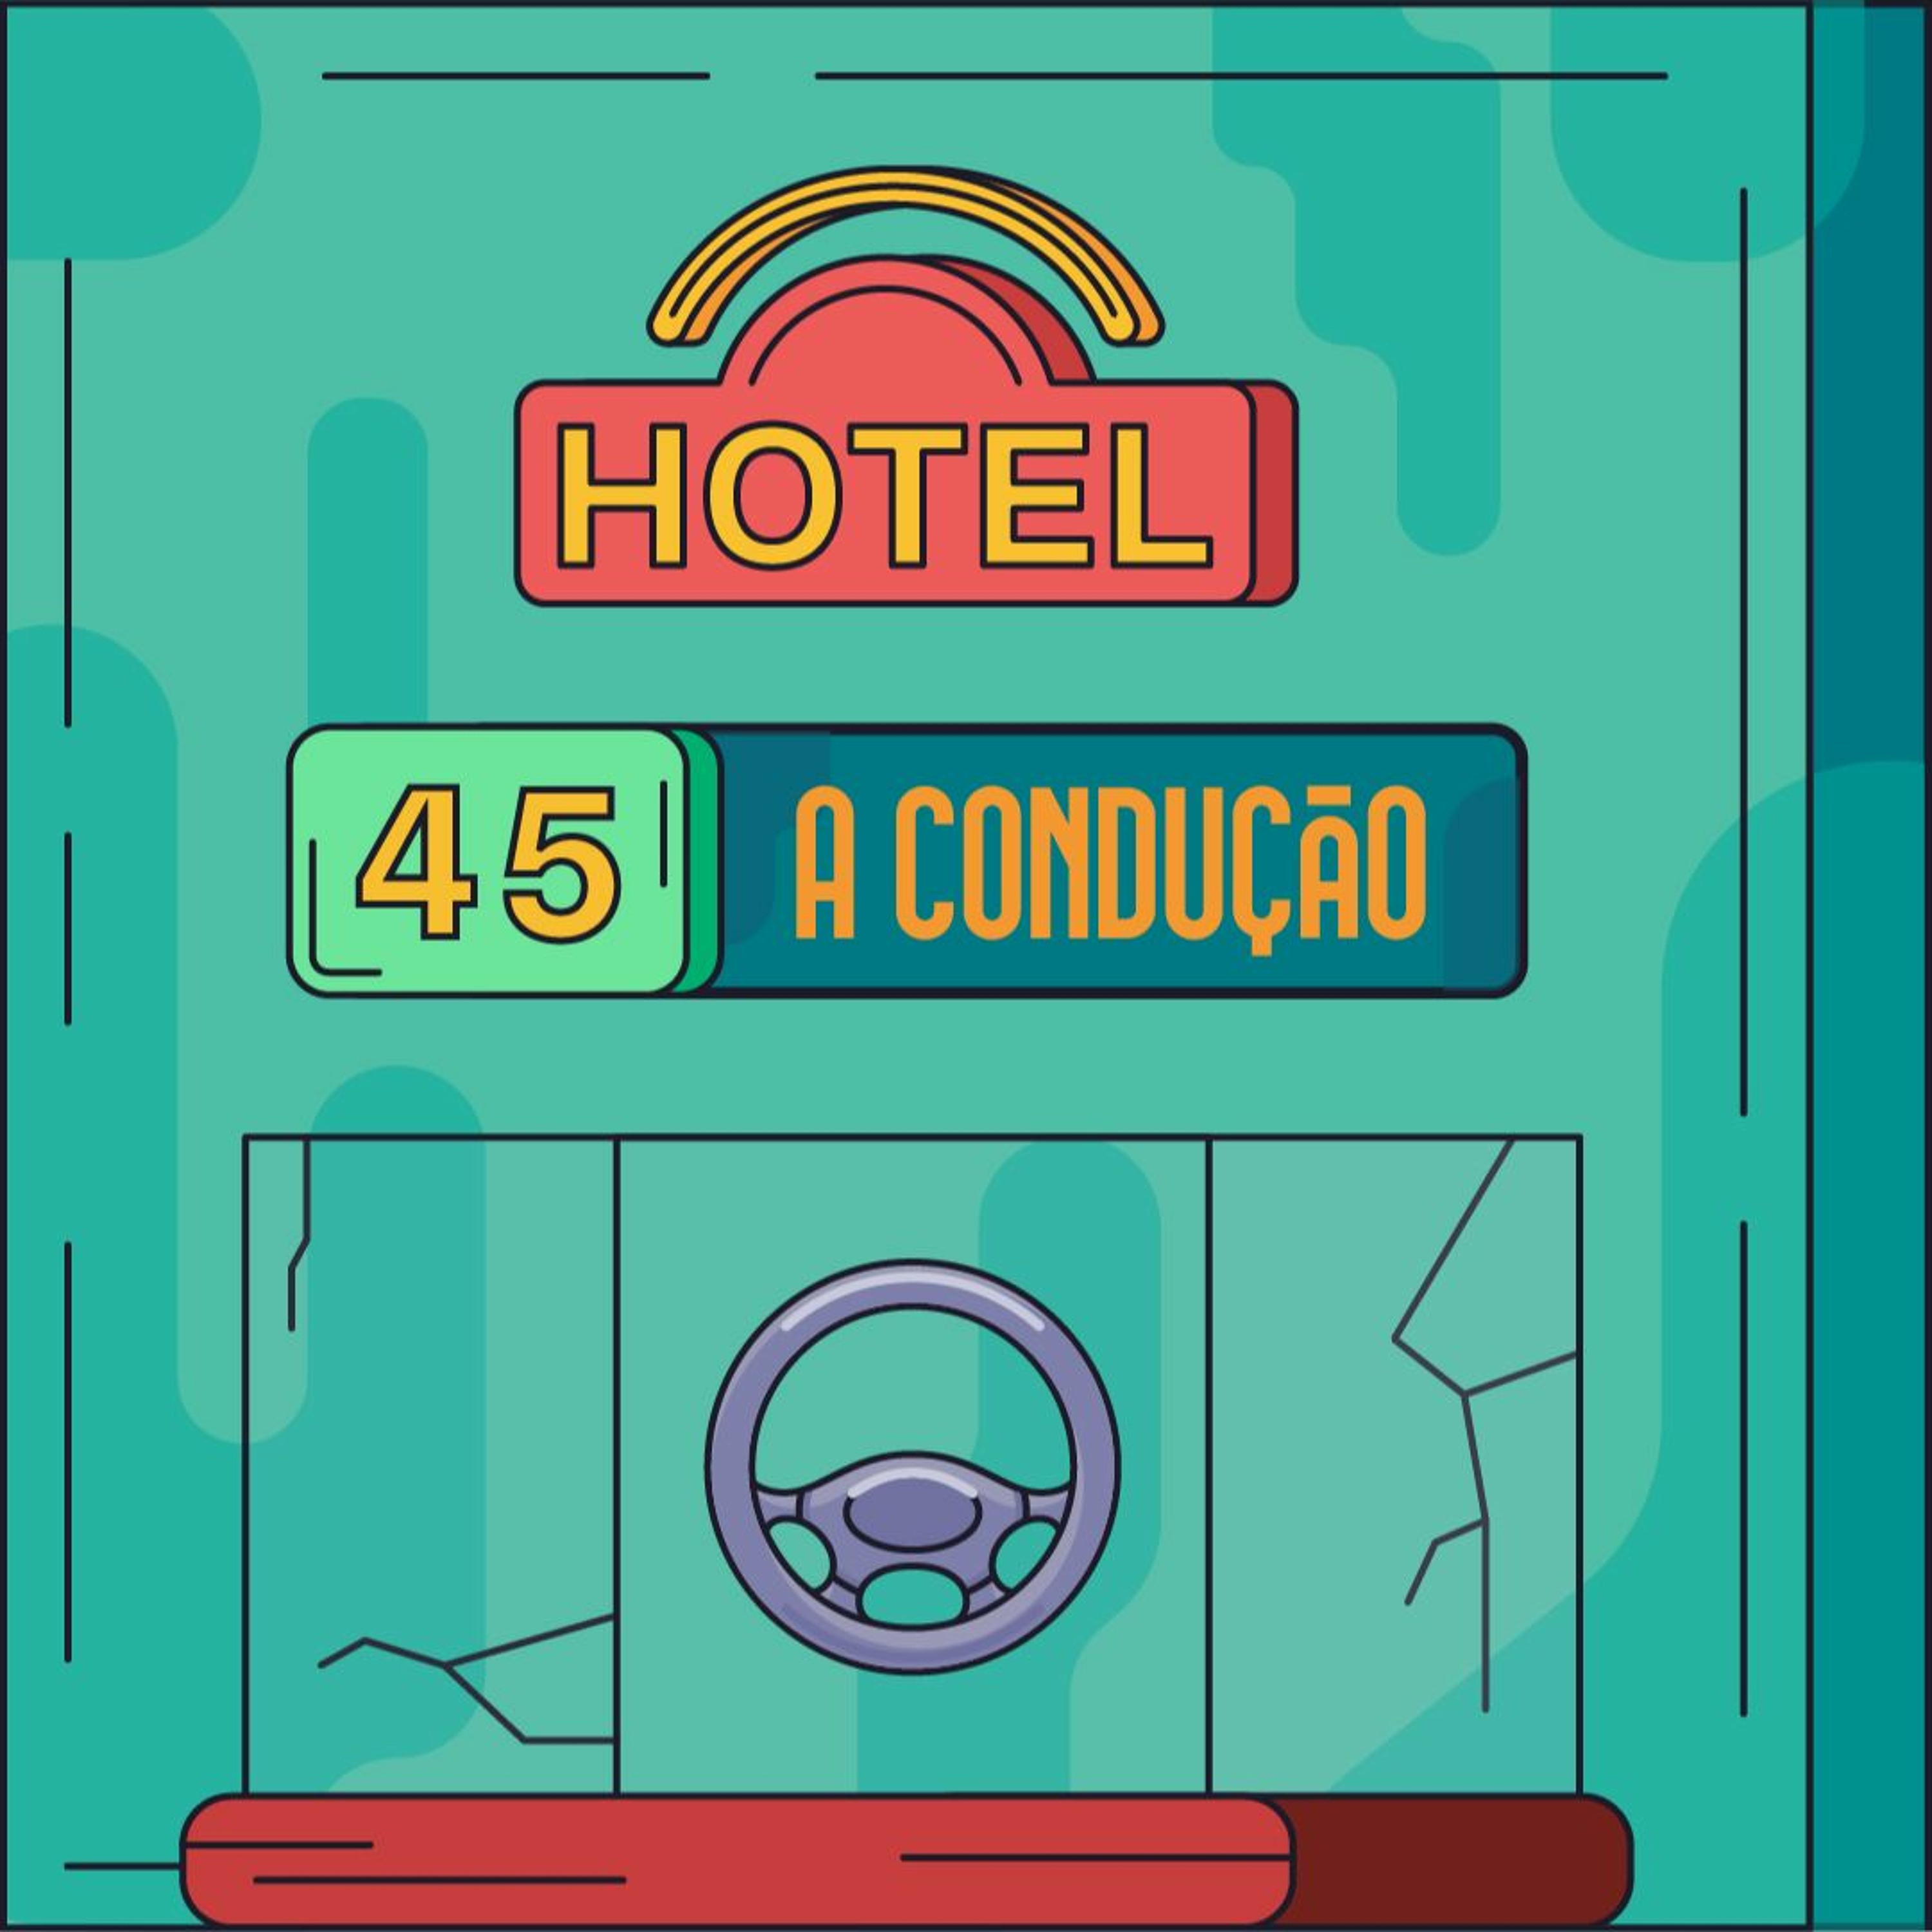 Hotel #45 - A Condução